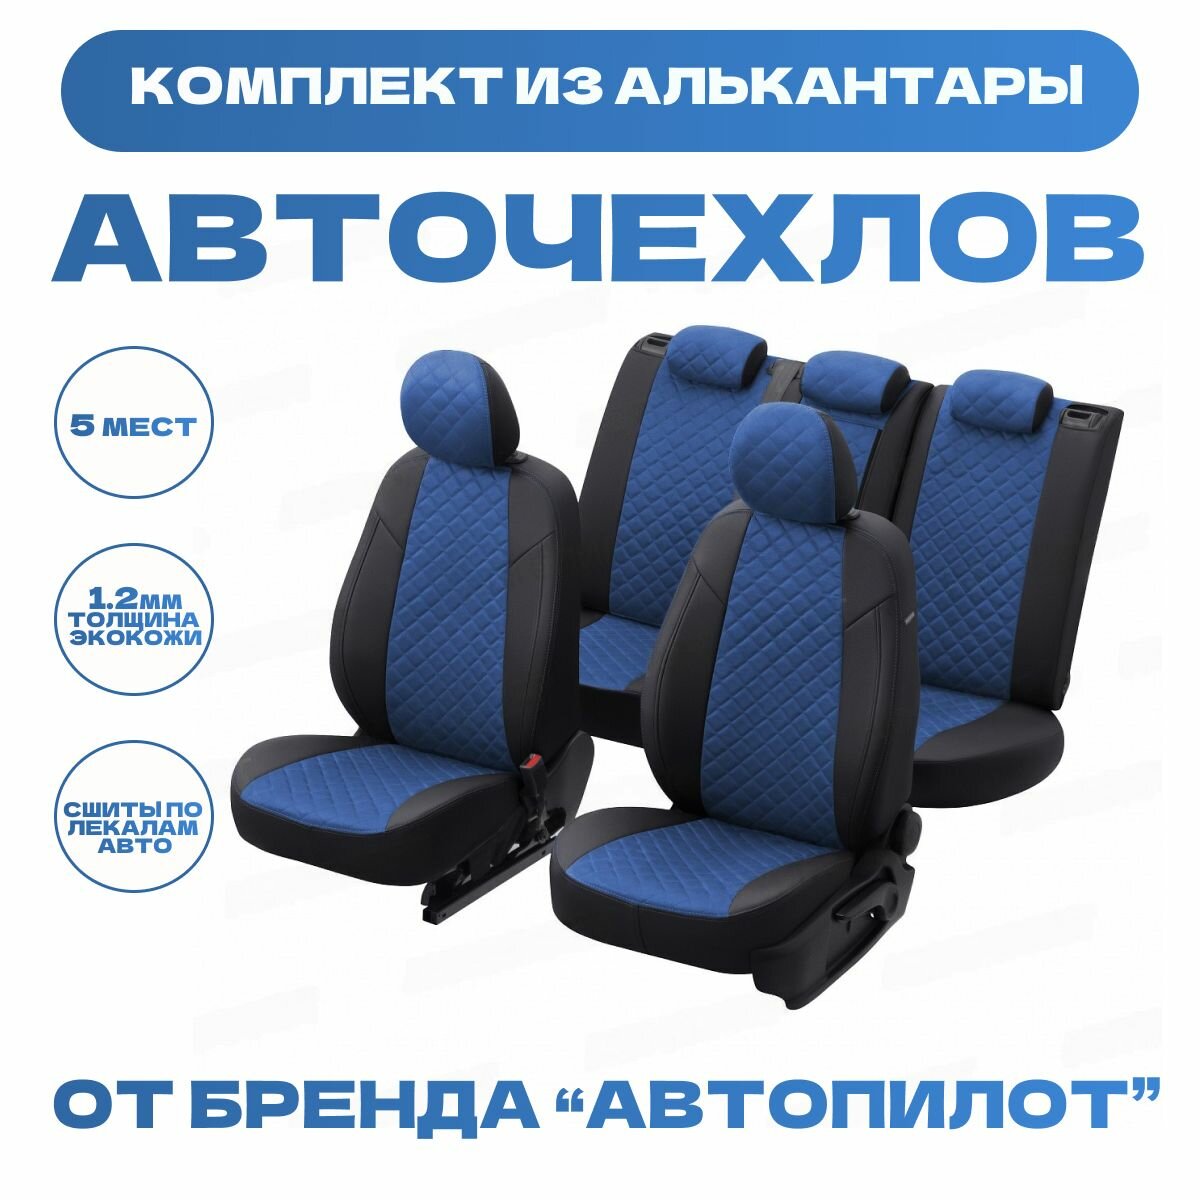 Модельные авточехлы АВТОПИЛОТ для Skoda Rapid (со сплошной задней спинкой, c 2014г.) алькантара ромб, черно-синие